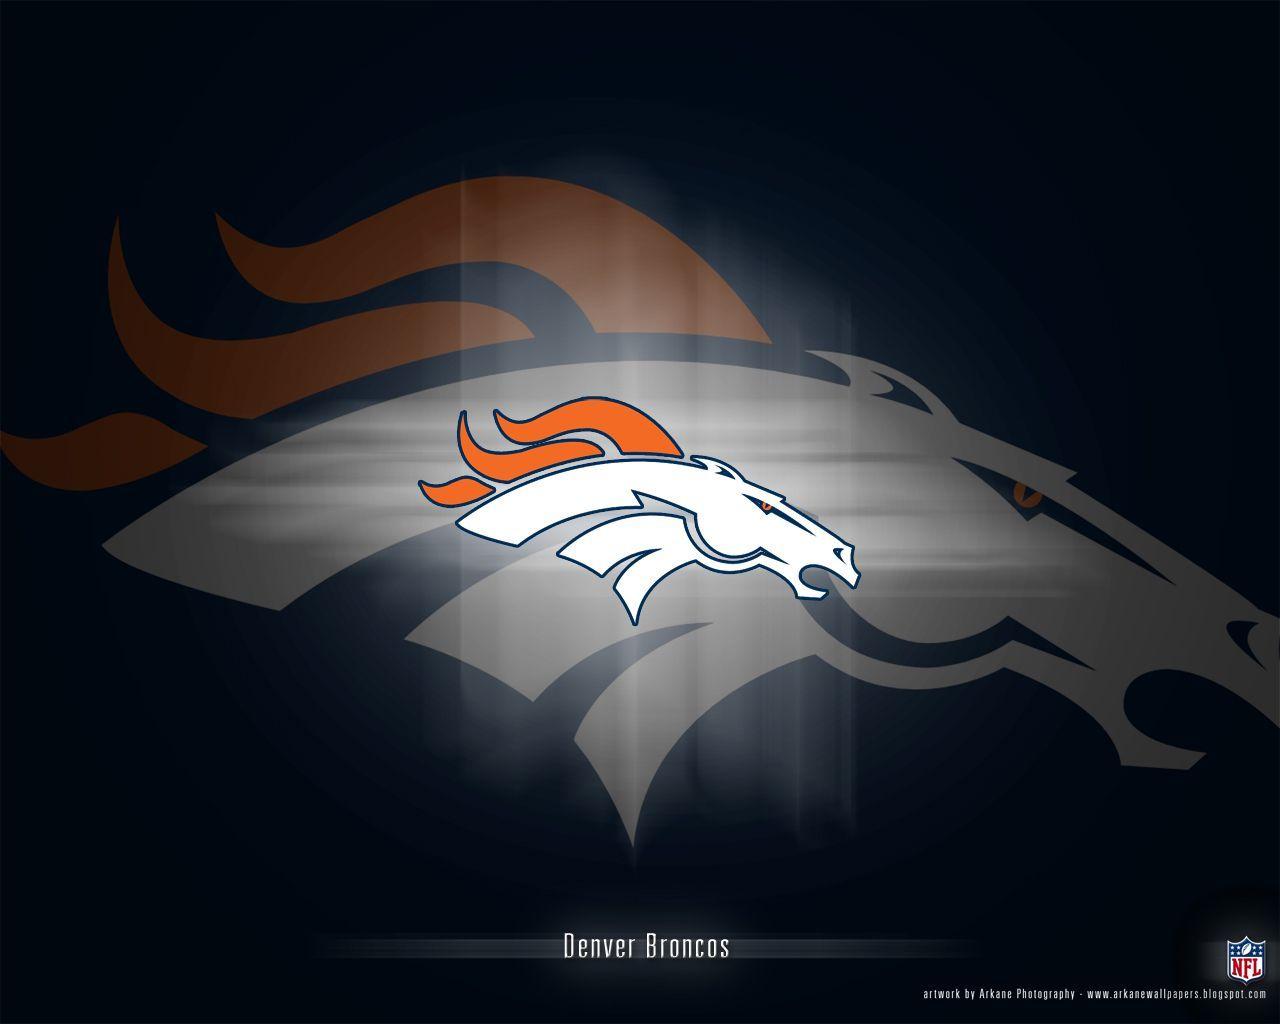 Denver Broncos Desktop Background HD 24762 Image. wallgraf